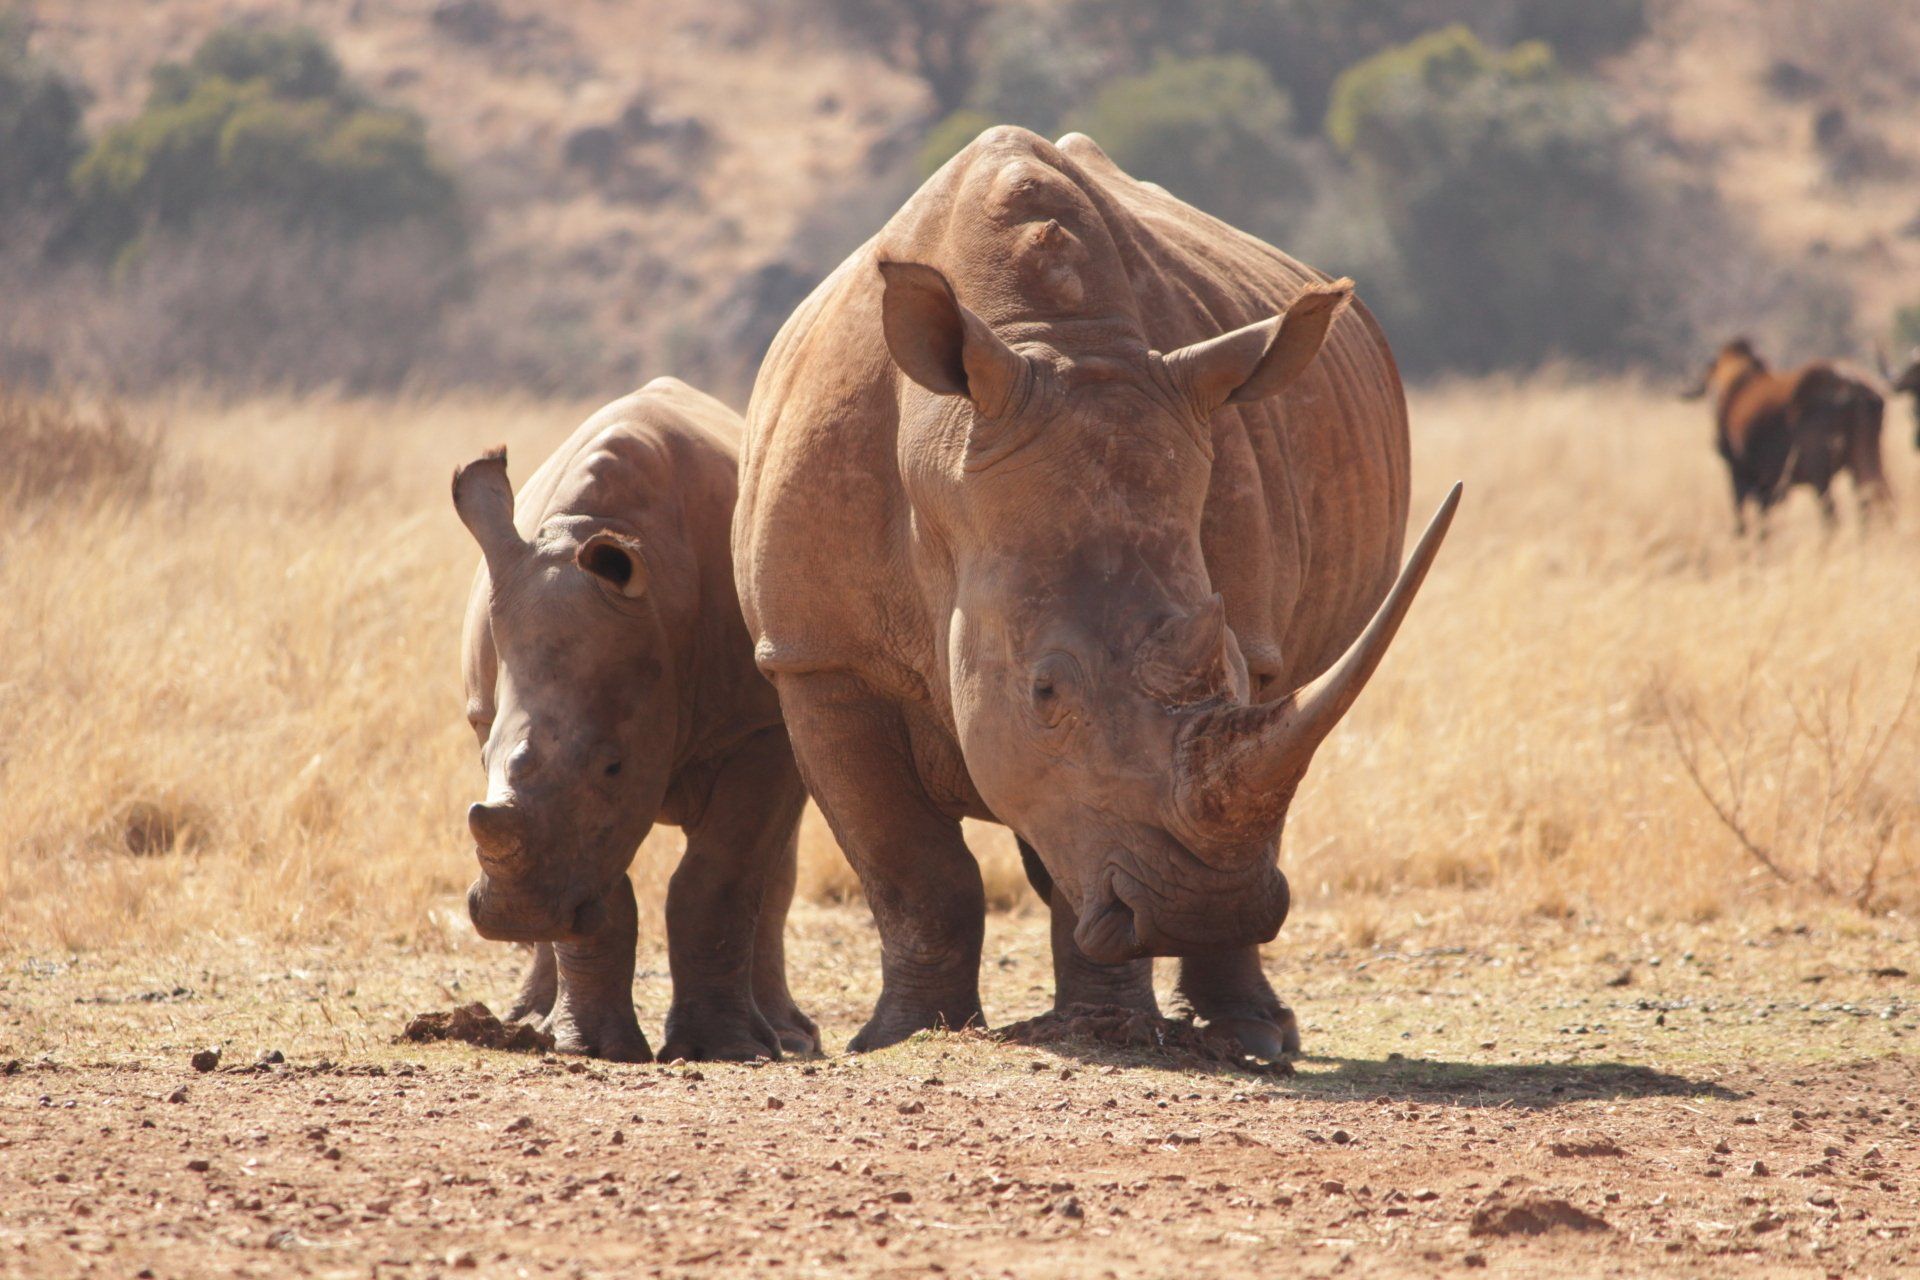 African rhinoceros